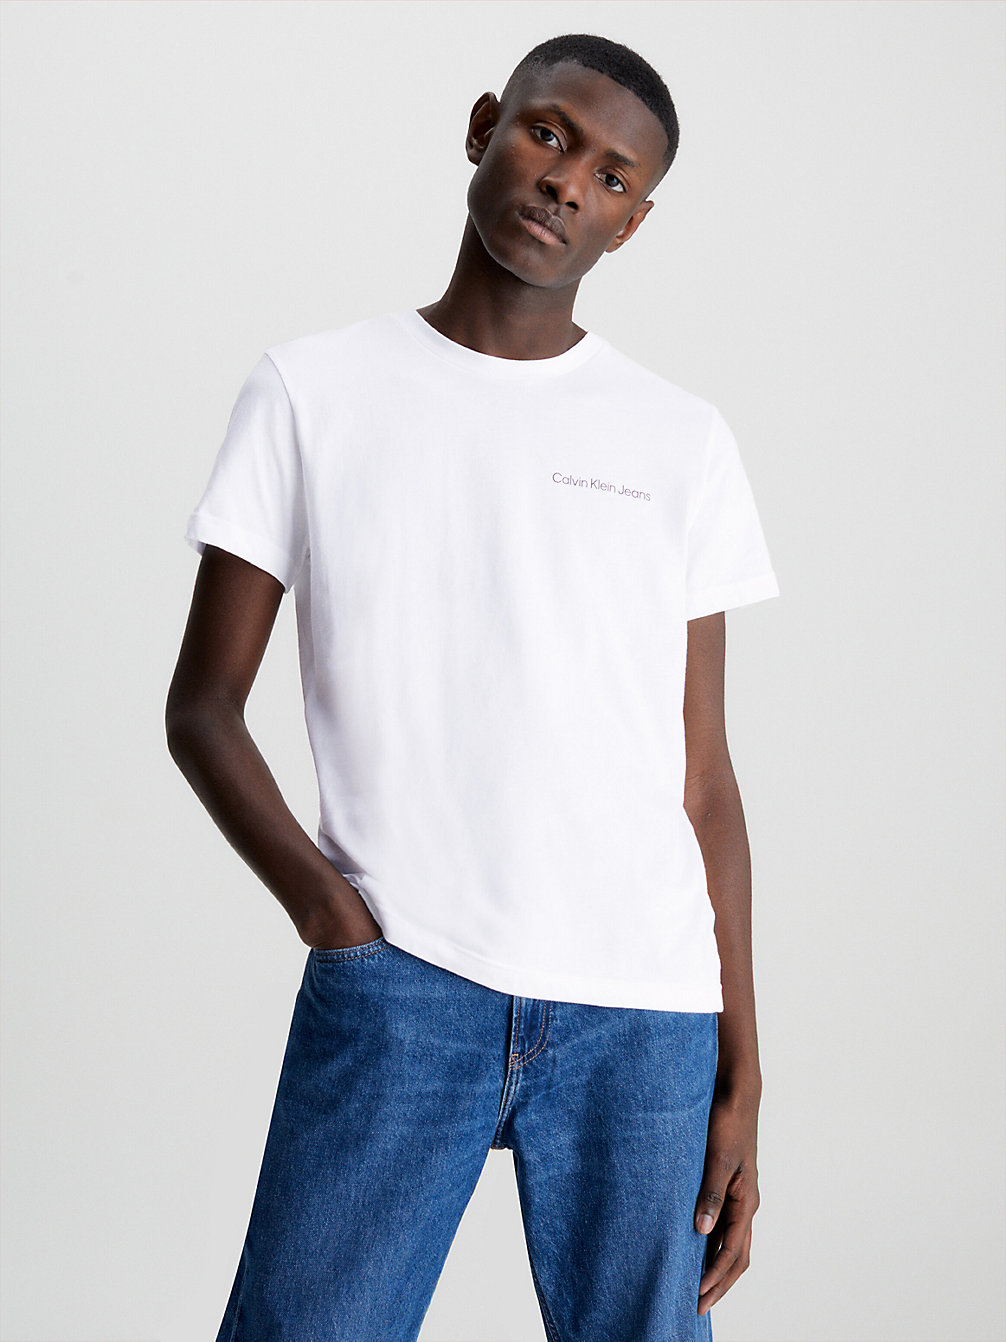 BRIGHT WHITE > Wąski T-Shirt Z Logo Z Bawełny Organicznej > undefined Mężczyźni - Calvin Klein